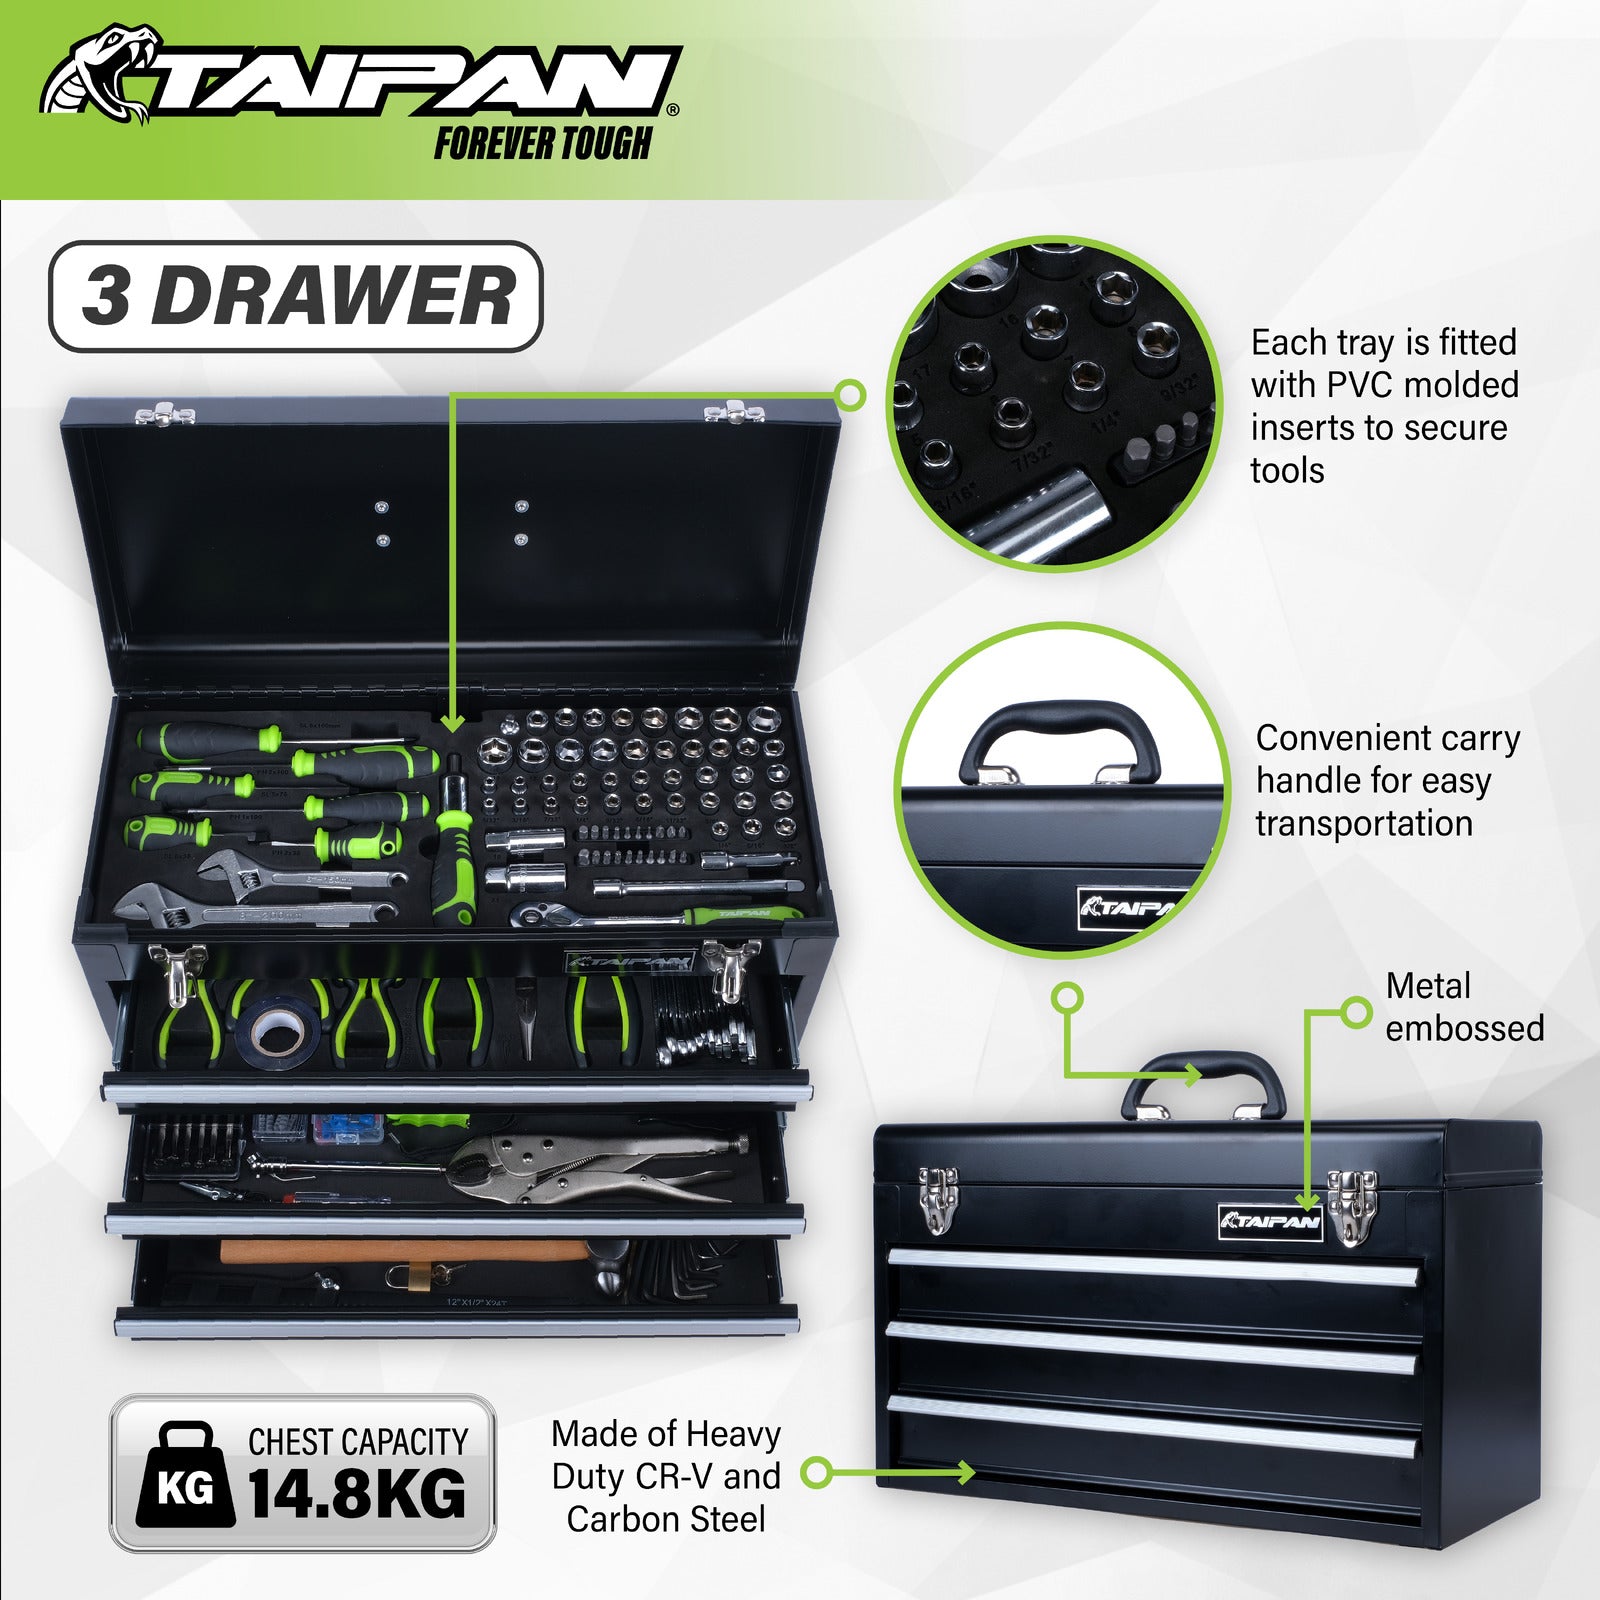 Taipan 300PCE 3 Drawer Tool Chest Kit Premium Quality Chrome Vanadium Steel - SILBERSHELL